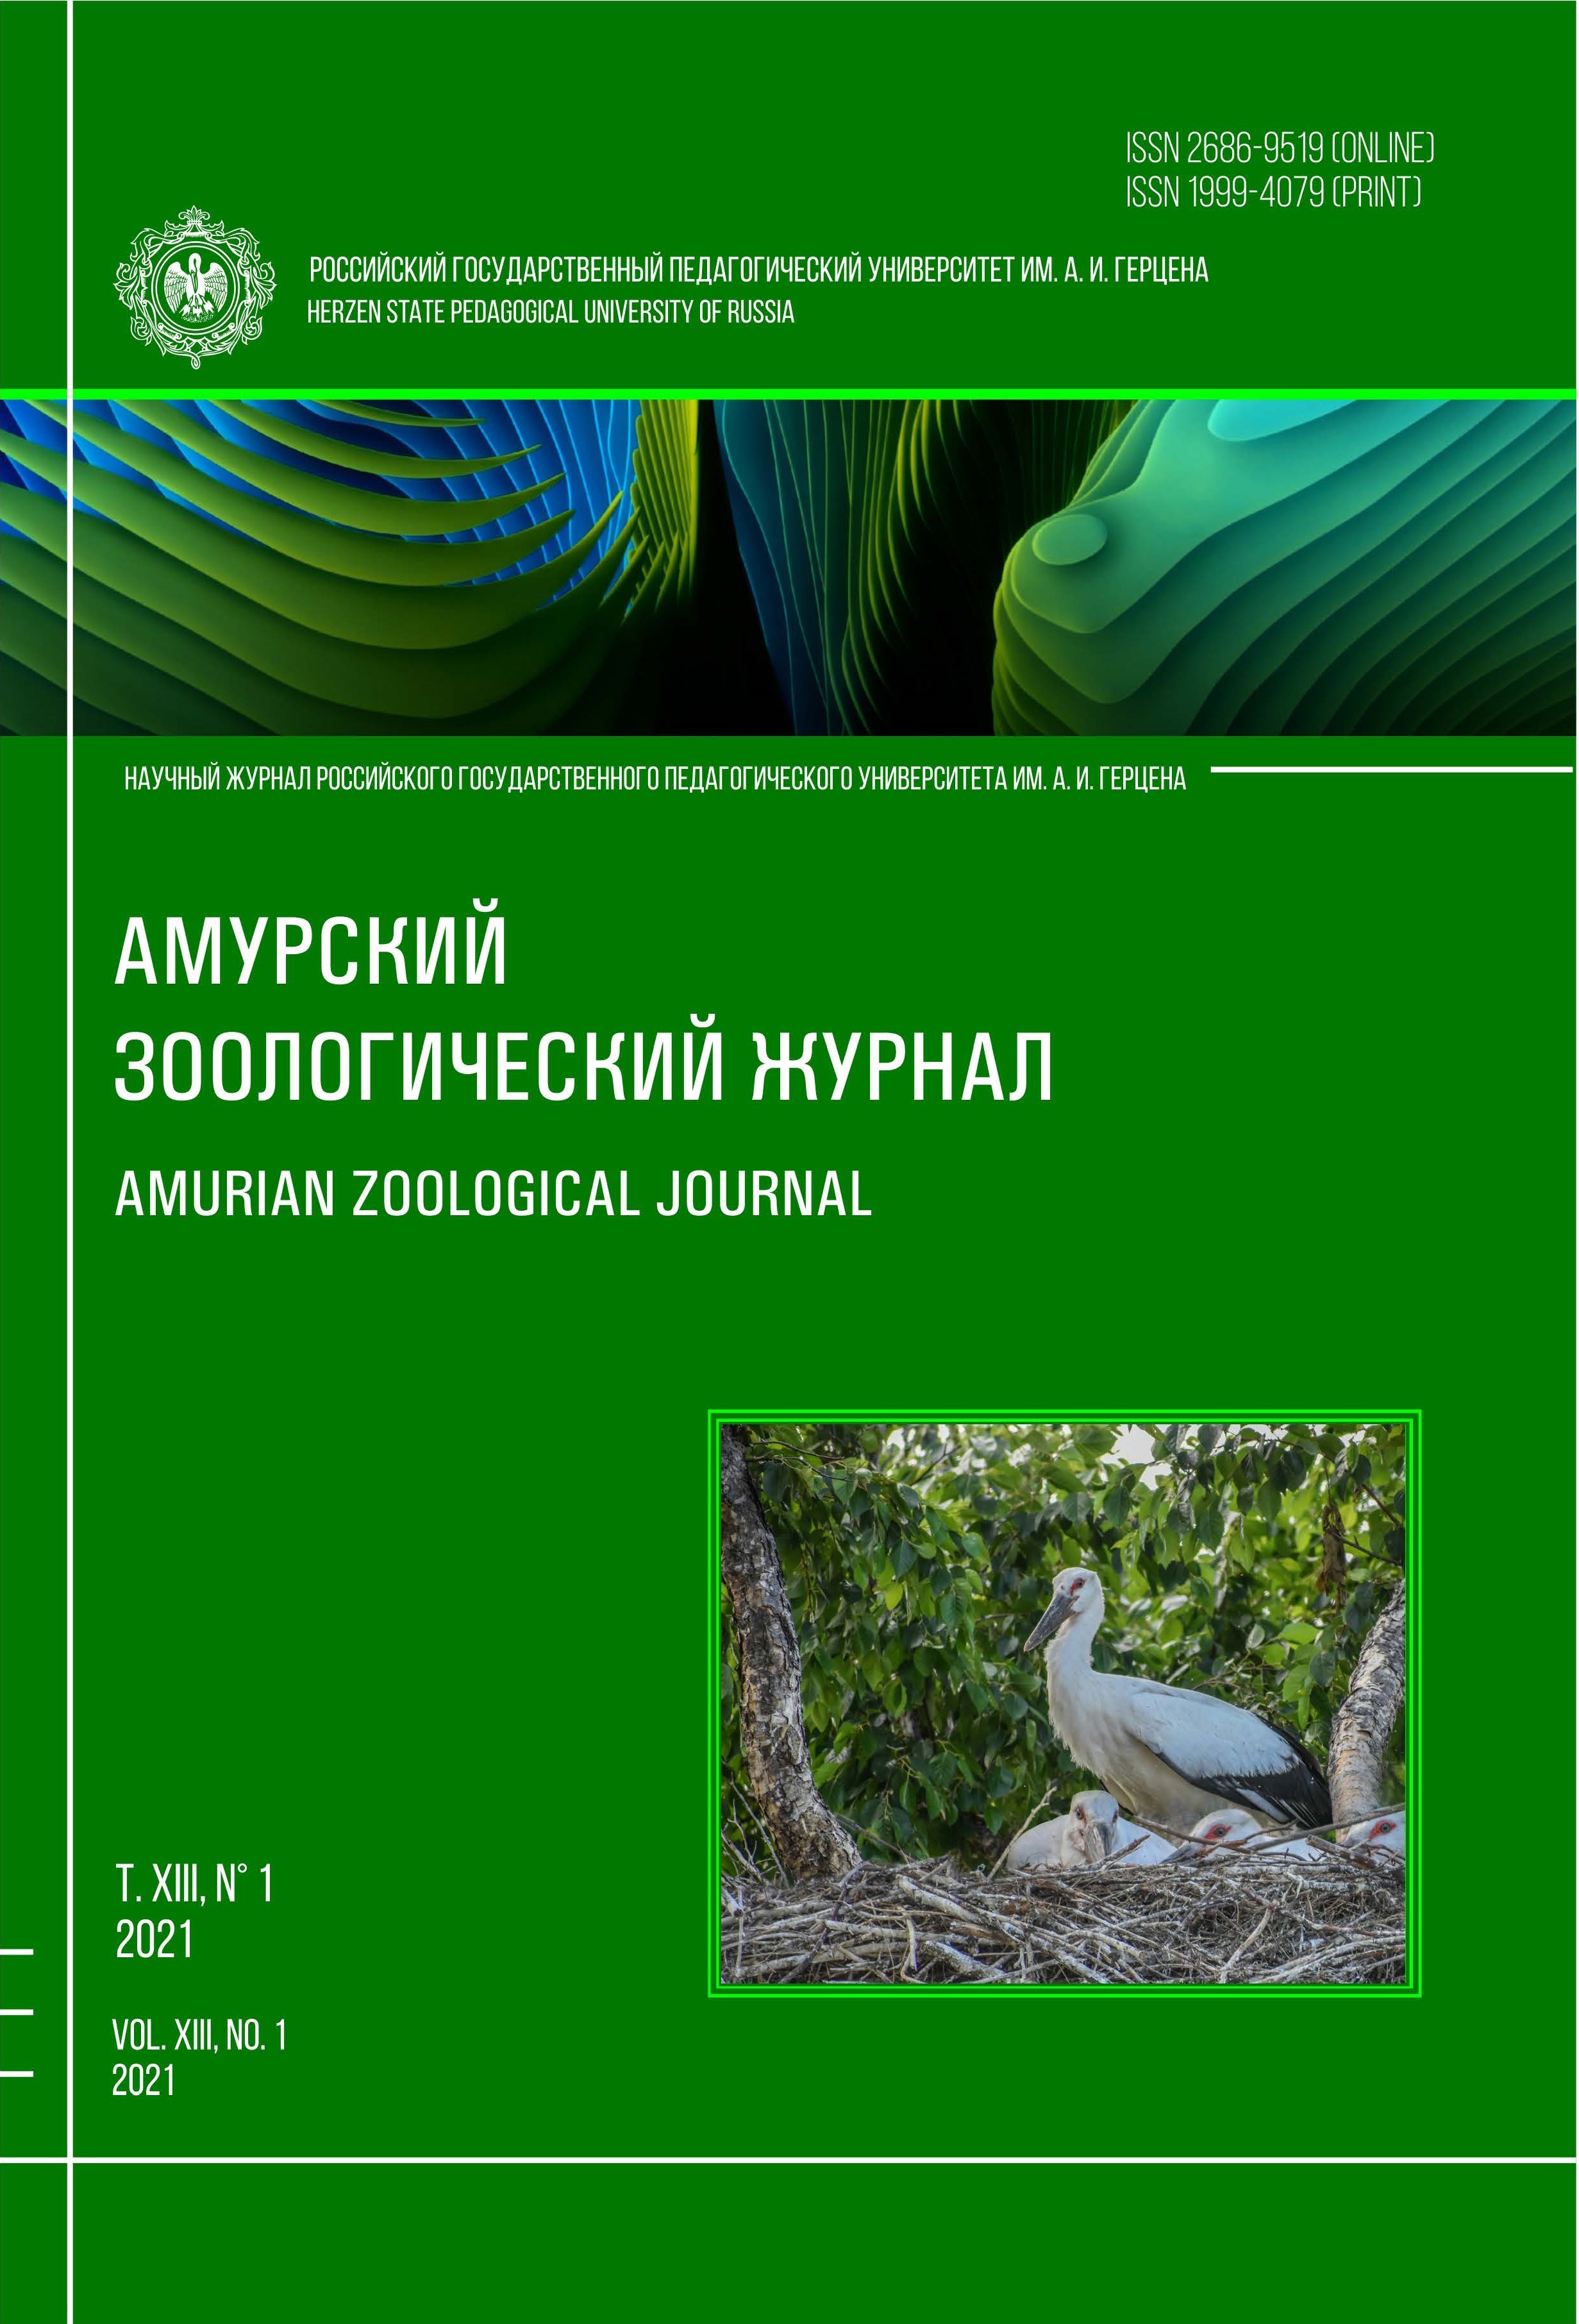 Обложка издания "Амурский зоологический журнал" (т. XIII, № 1)